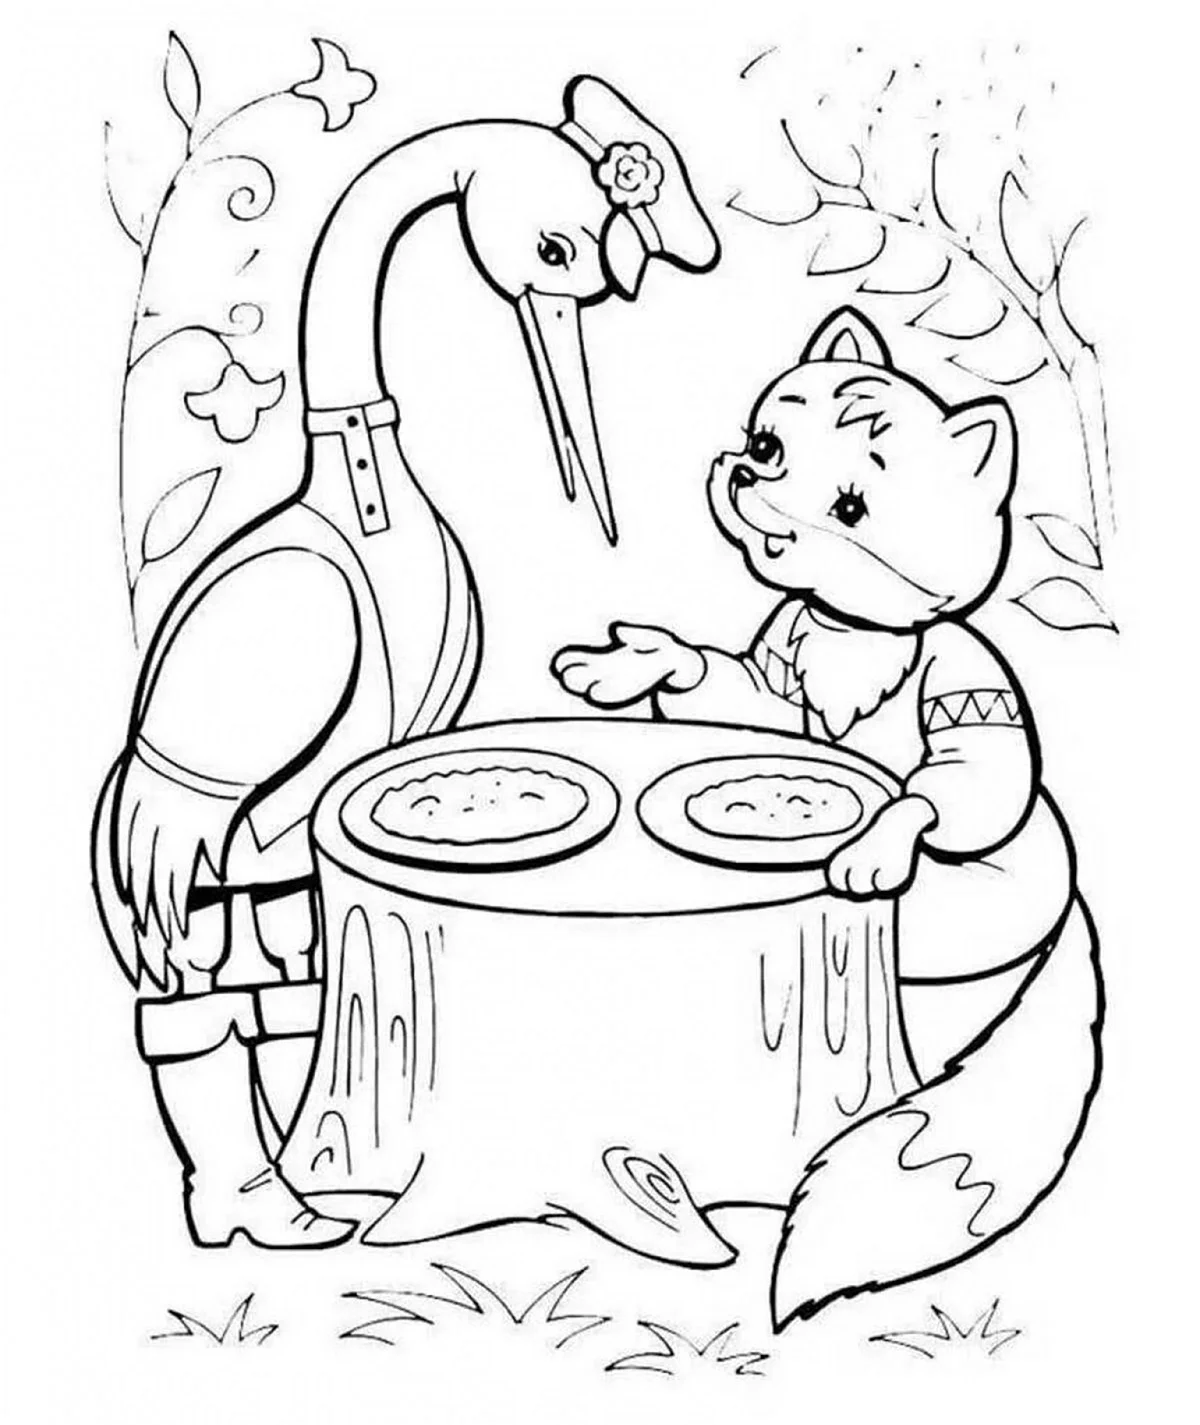 Иллюстрация к сказке лиса и журавль 1 класс. Для срисовки